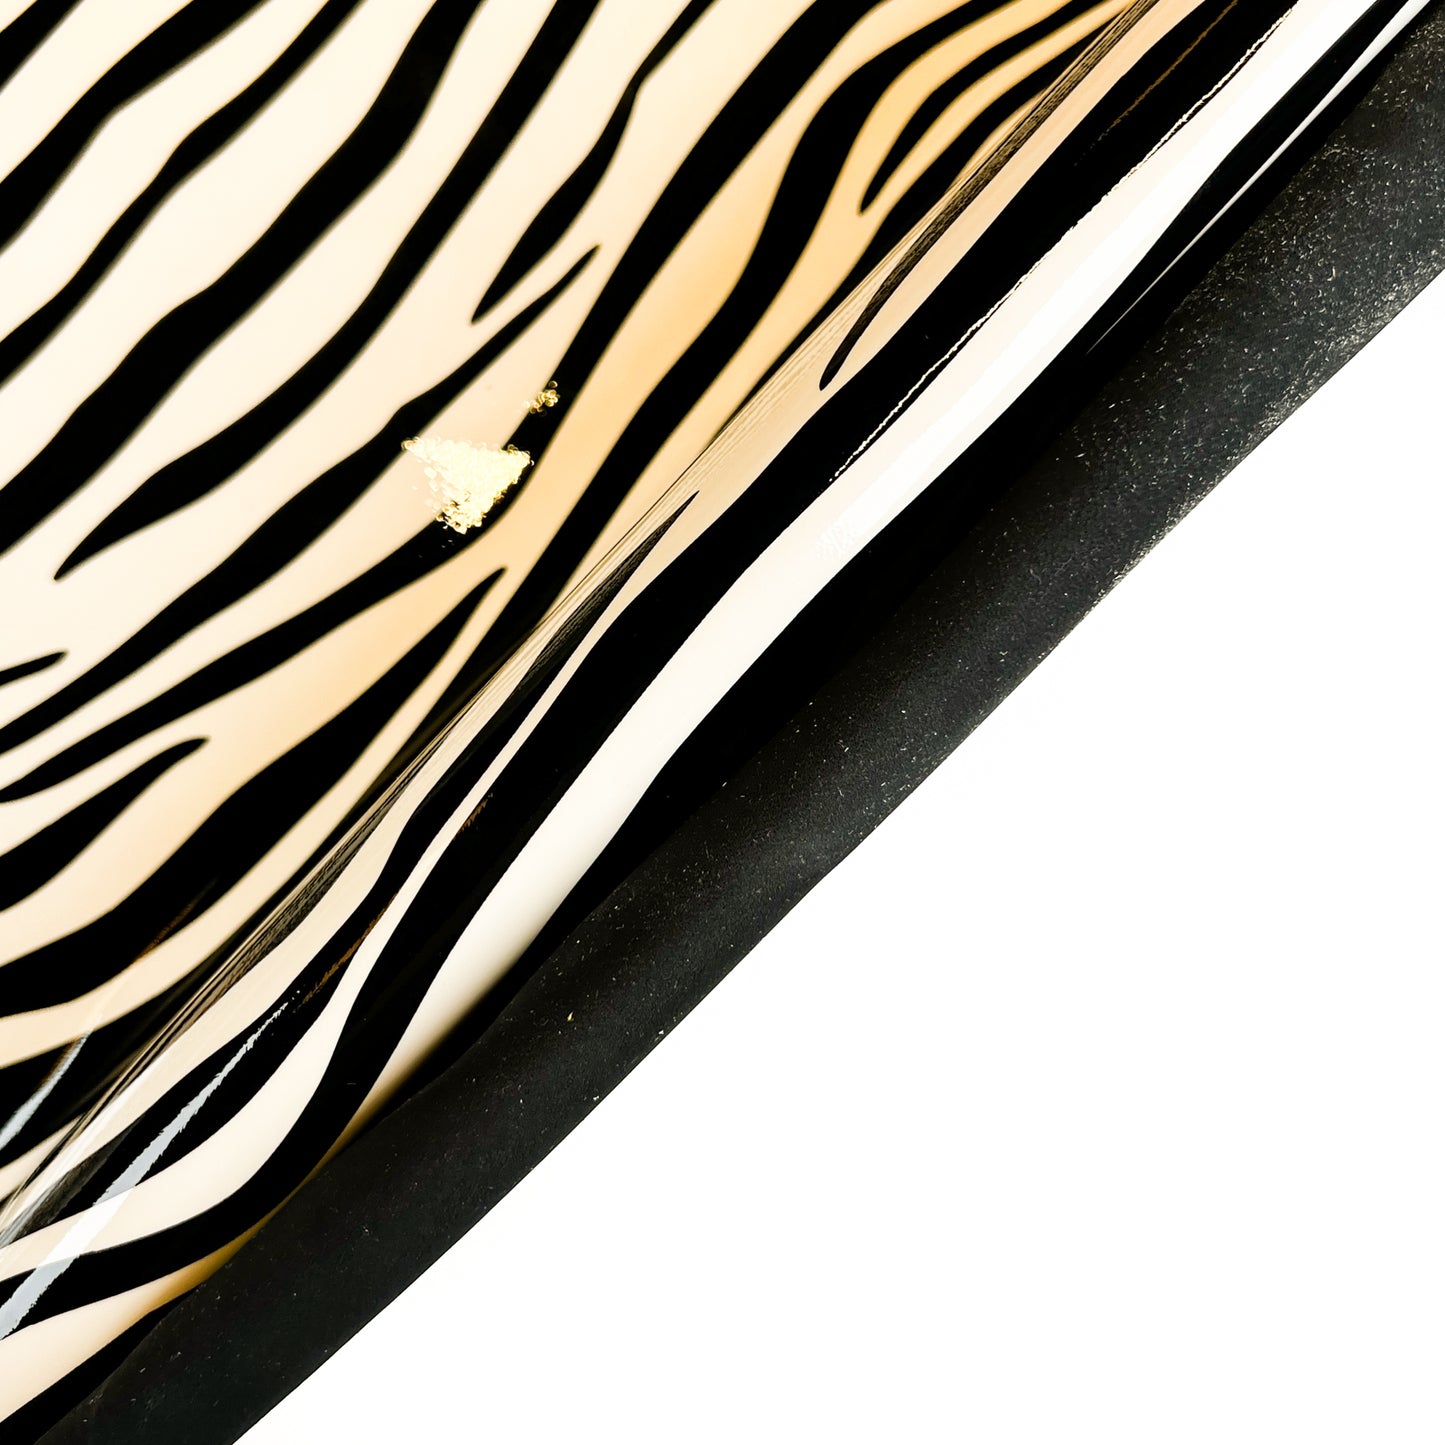 Black & White Zebra Print Patent Lambskin 0.7mm/ 1.75oz / 1453